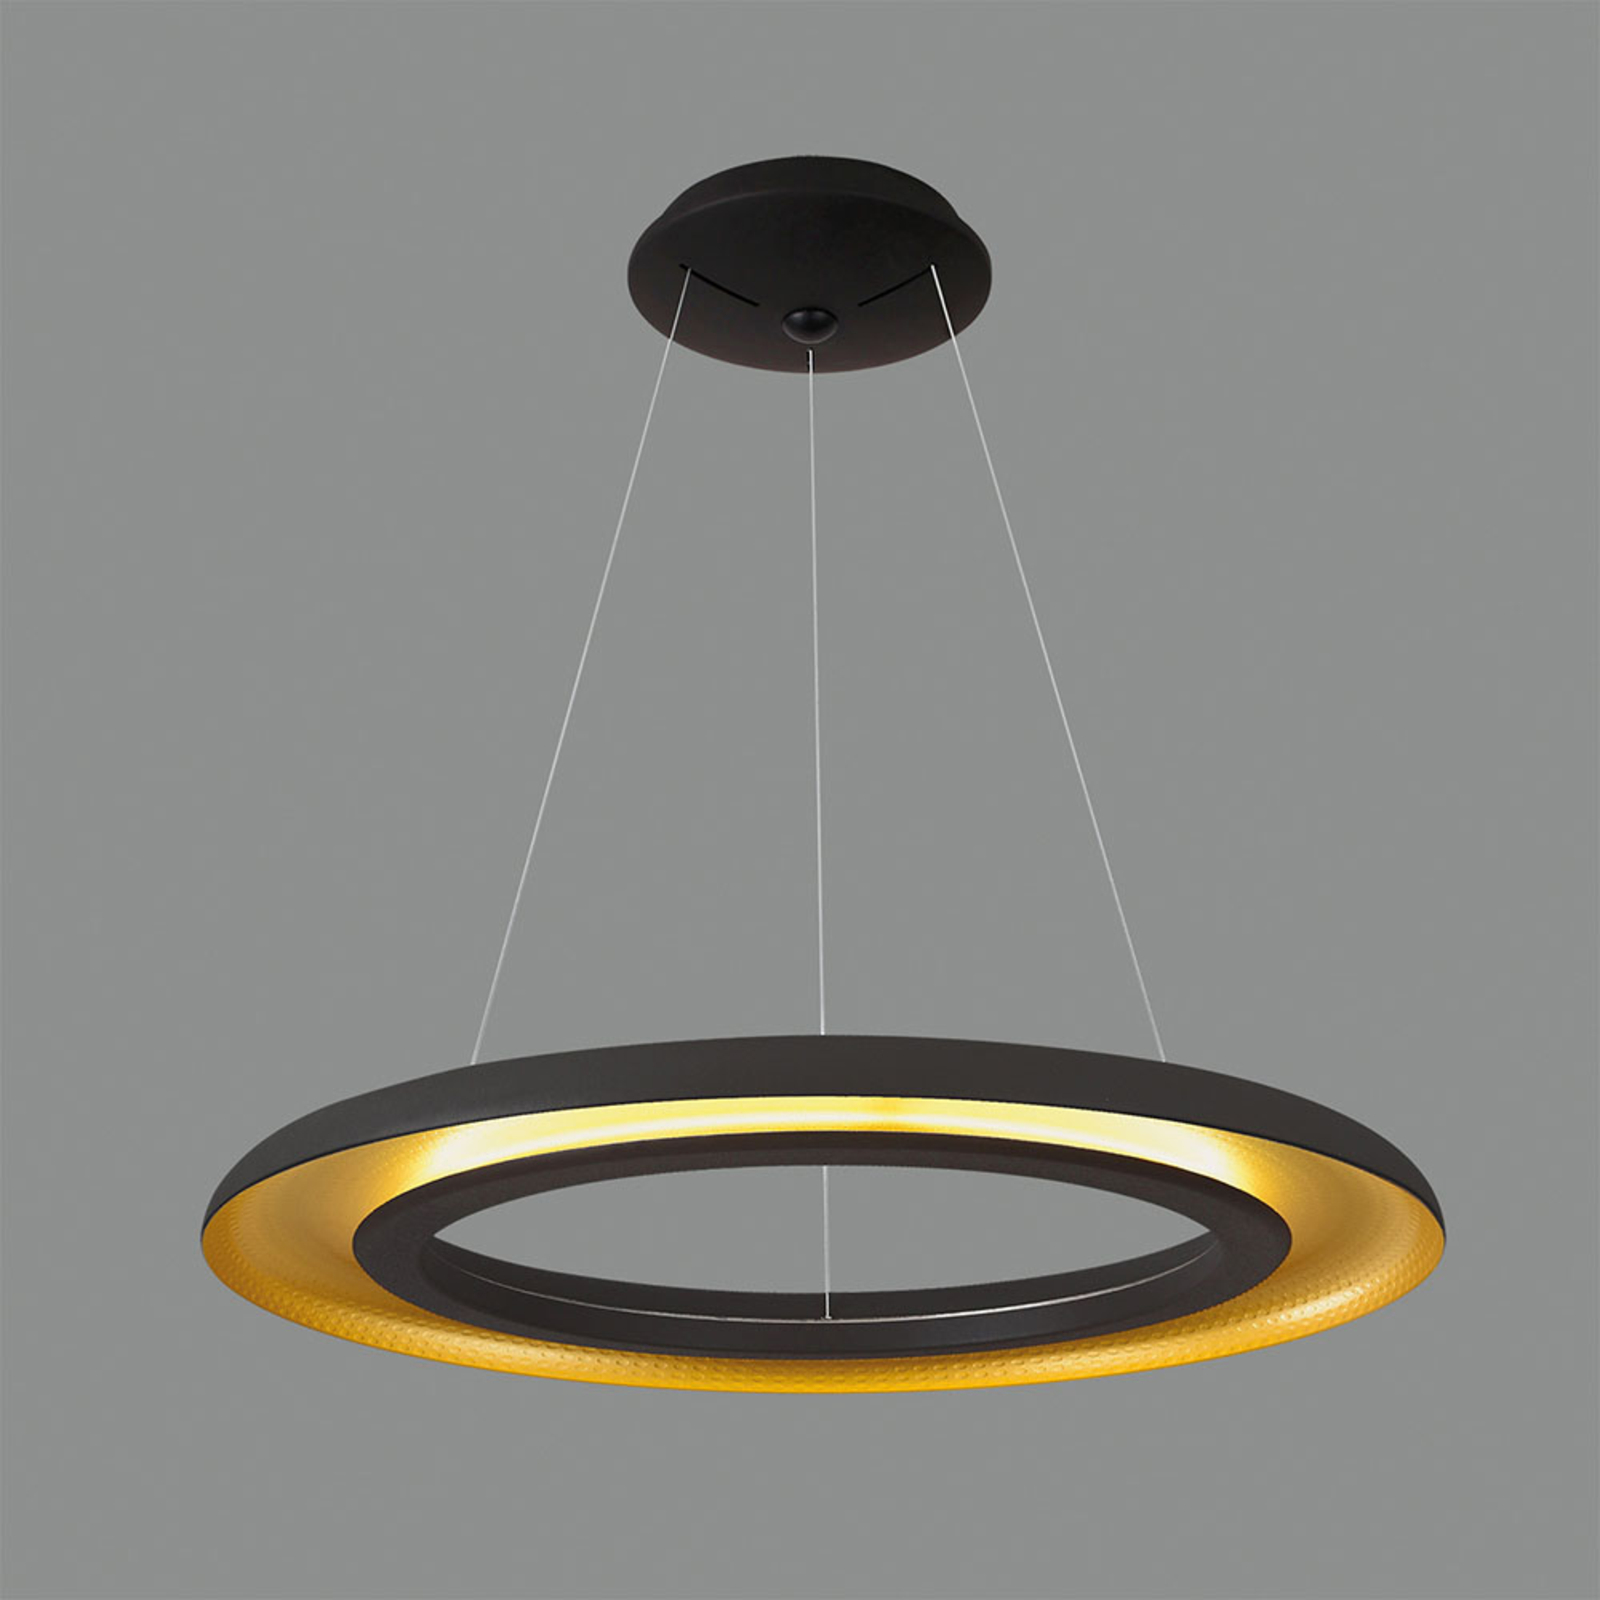 LED hanglamp Shiitake, zwart/goud